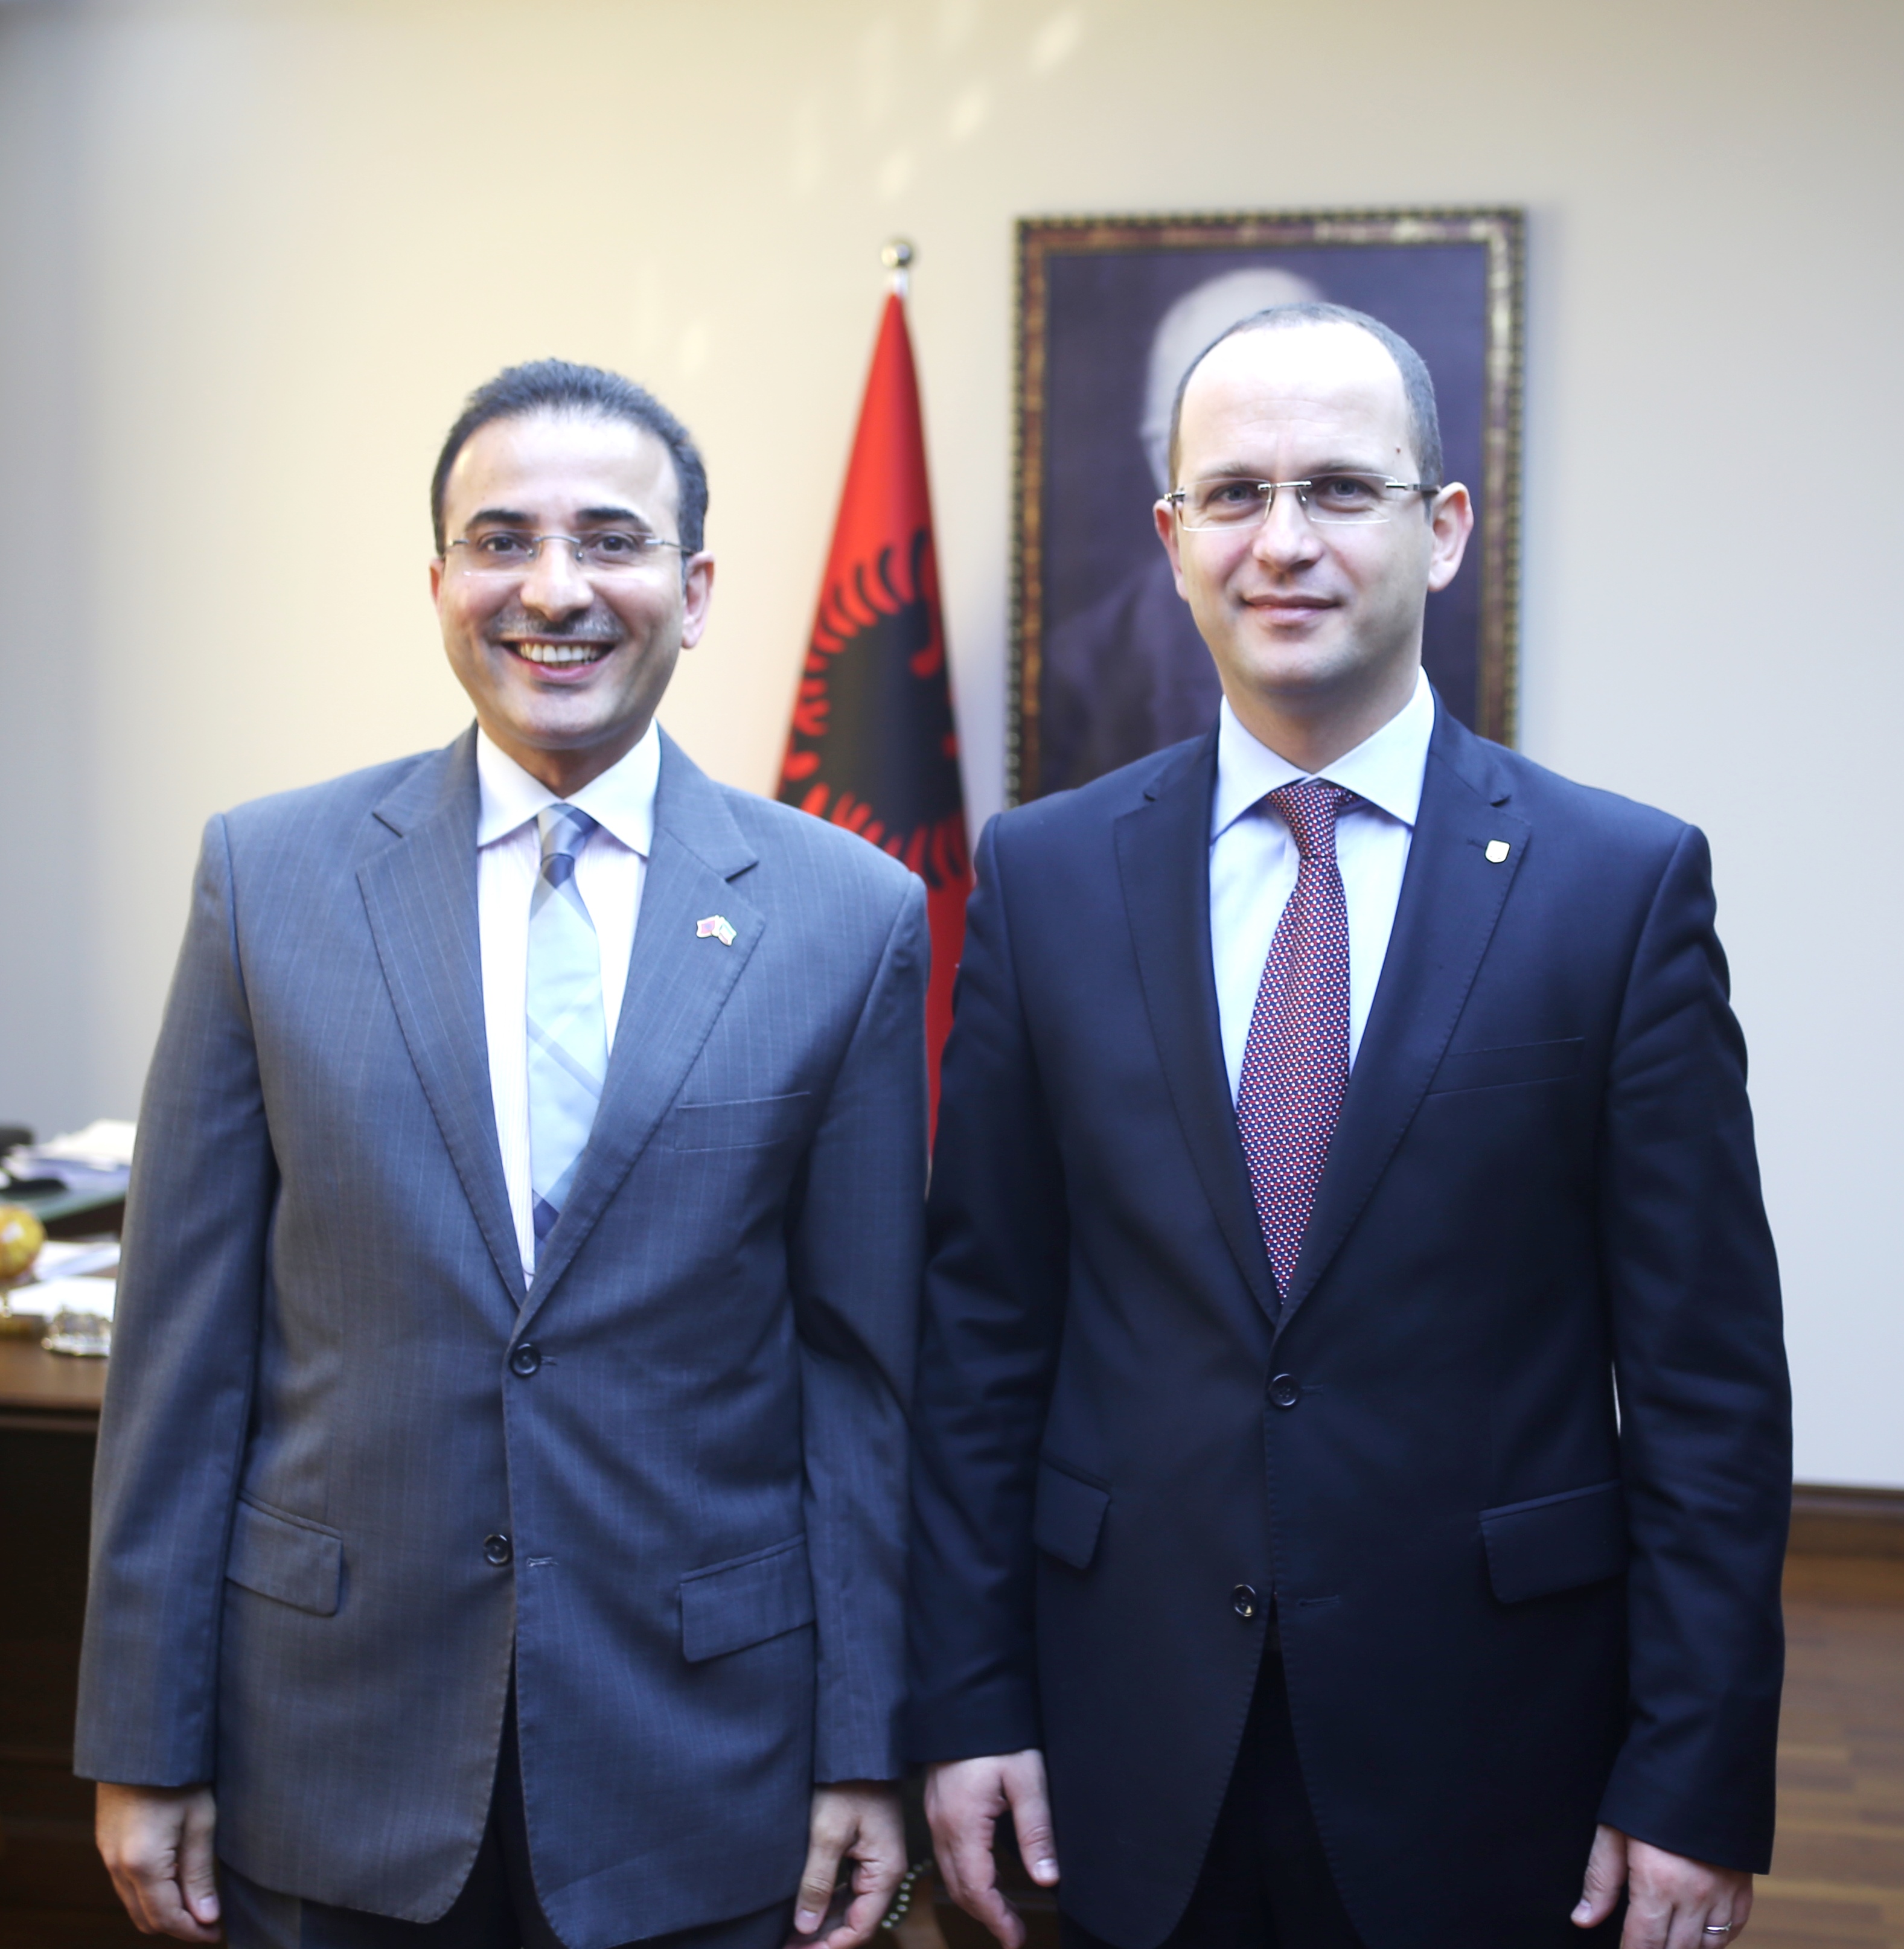 سفير دولة الكويت لدى ألبانيا نجيب عبدالرحمن البدر مع وزير خارجية البانيا ديتمير بوشاتي